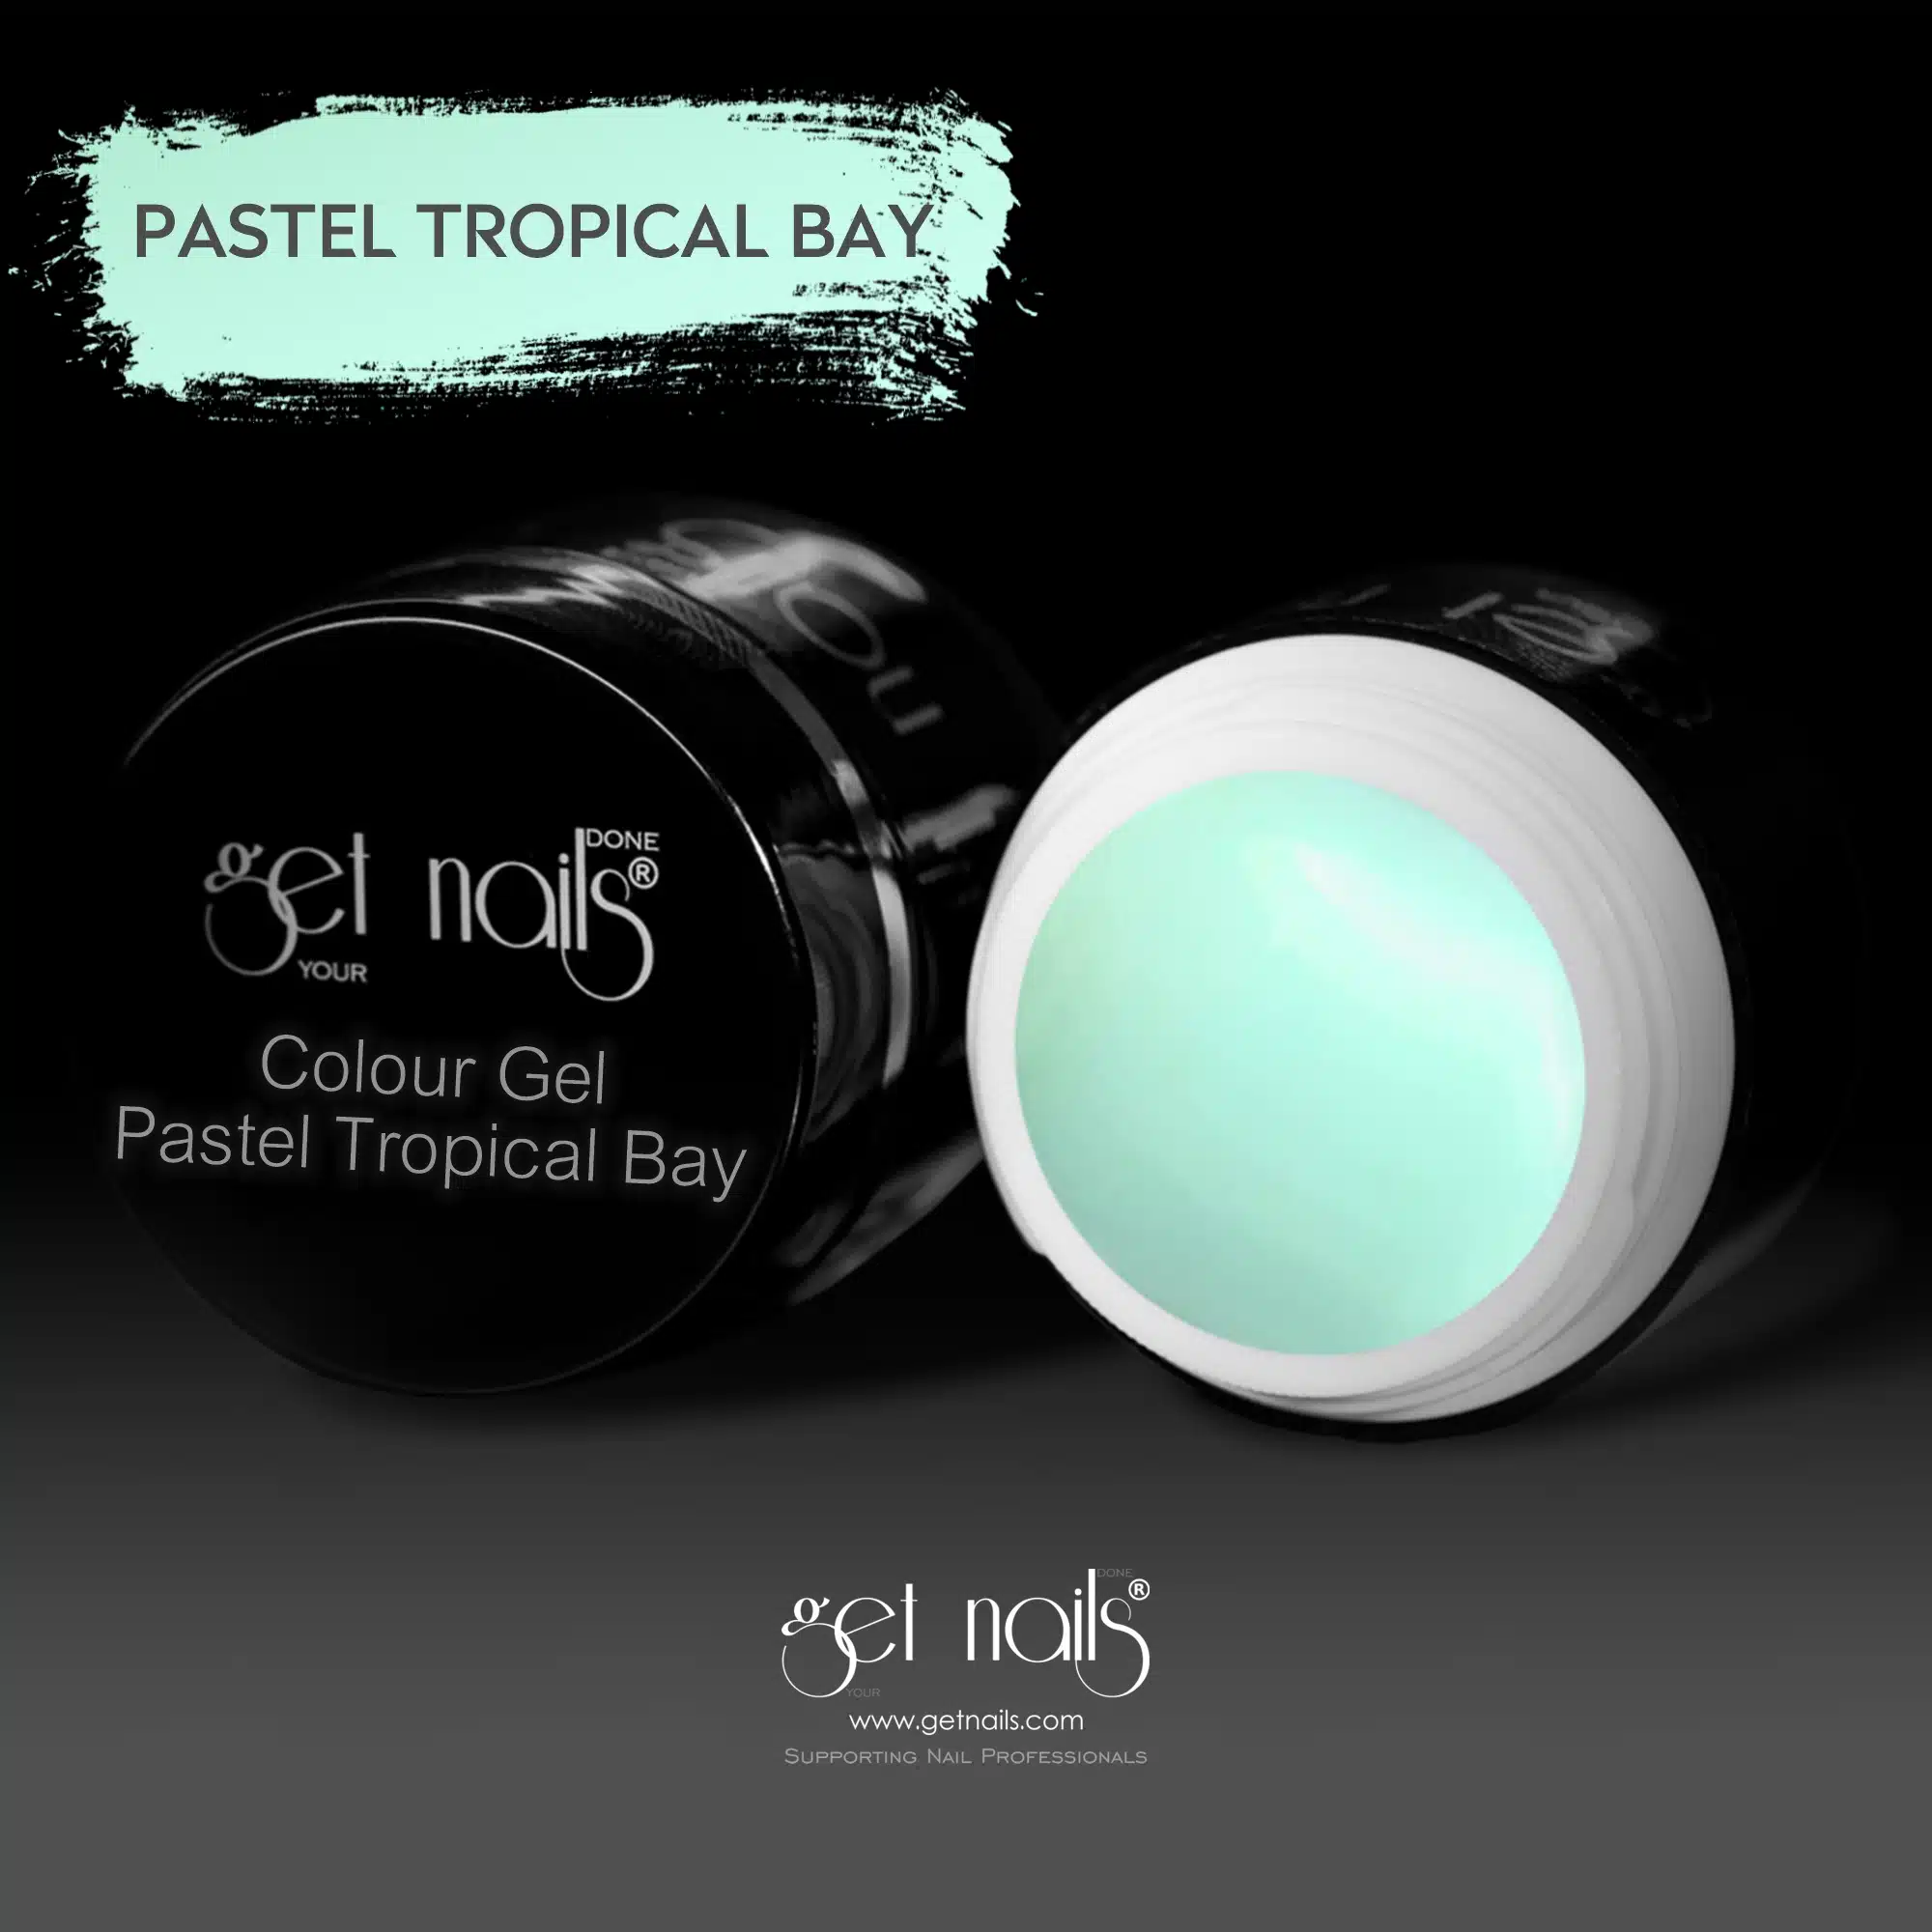 Get Nails Austria - Colour Gel Pastel Tropical Bay 5g